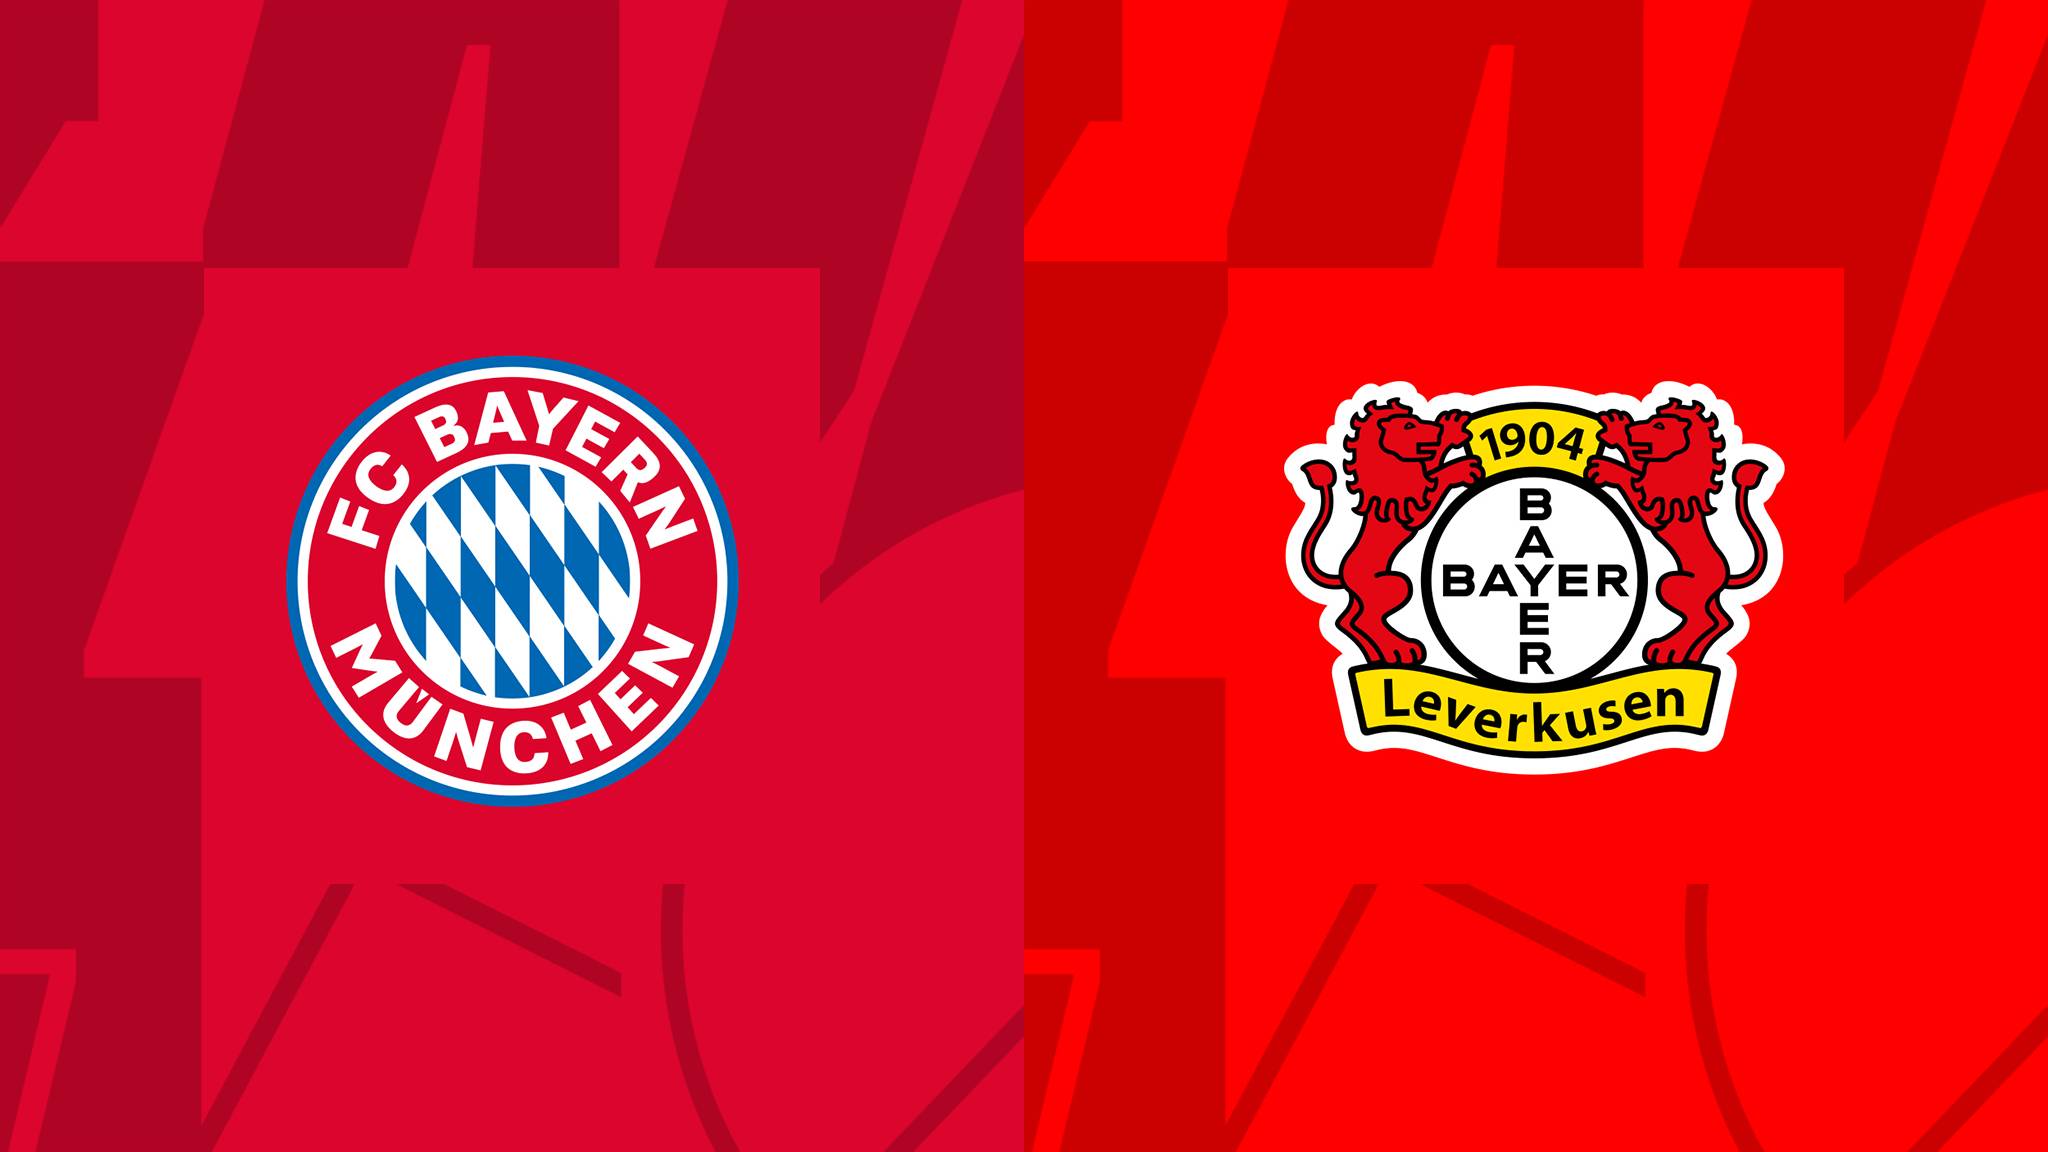  مشاهدة مباراة بايرن ميونيخ و باير ليفركوزن بث مباشر 30/09/2022 Bayern München vs Bayer Leverkusen